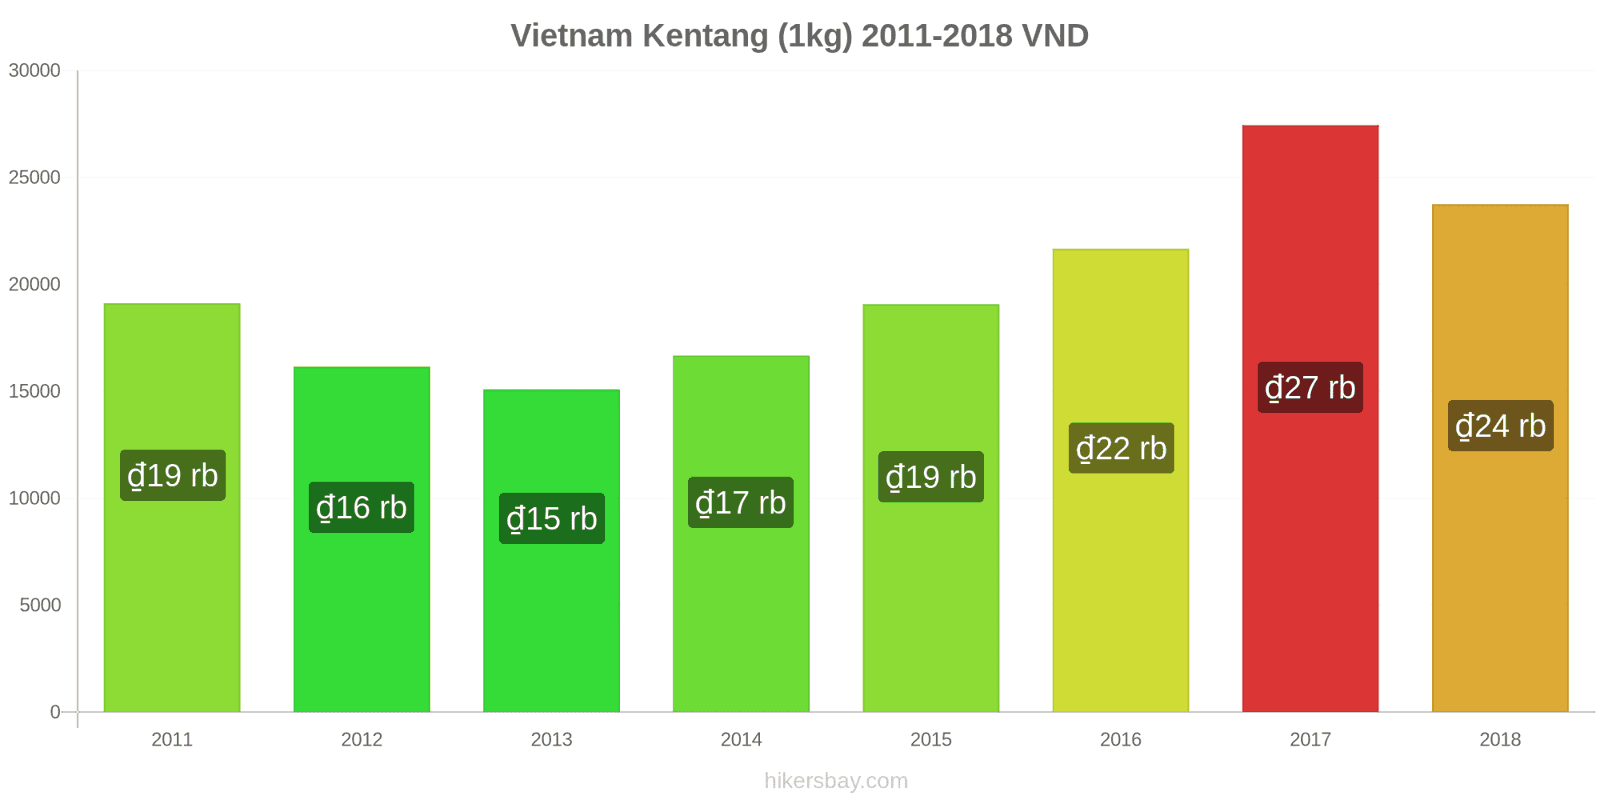 Vietnam perubahan harga Kentang (1kg) hikersbay.com